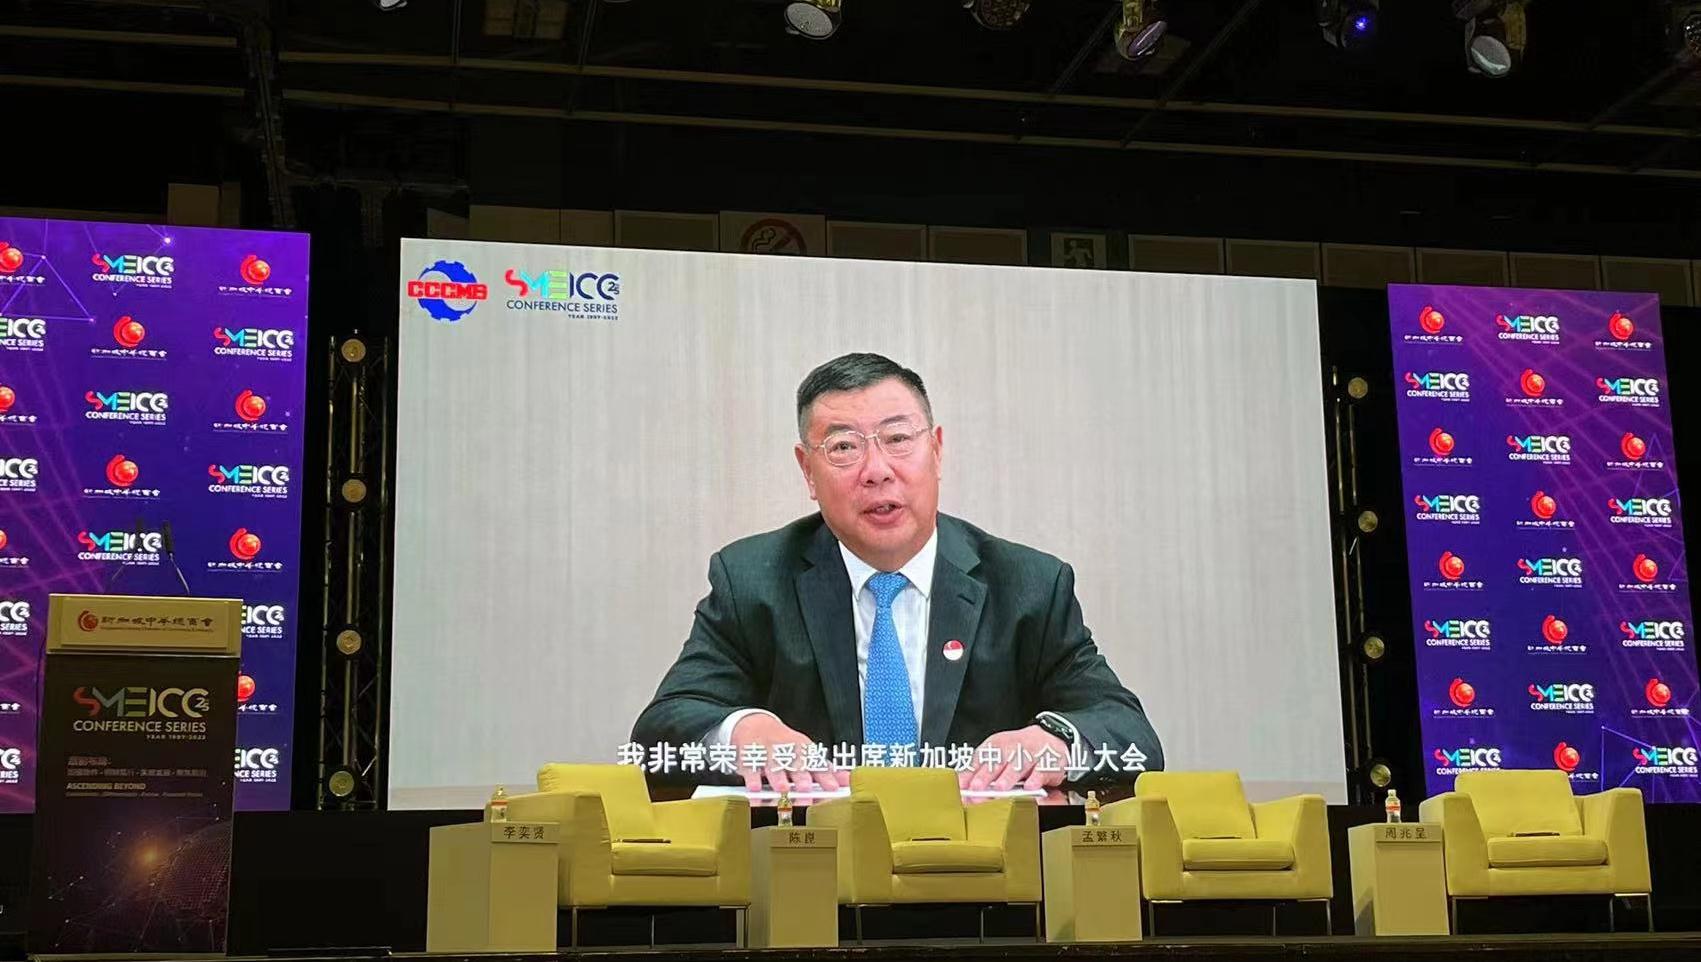 郑超常务副会长应邀以视频方式出席第25届新加坡中小企业大会并发表主旨演讲